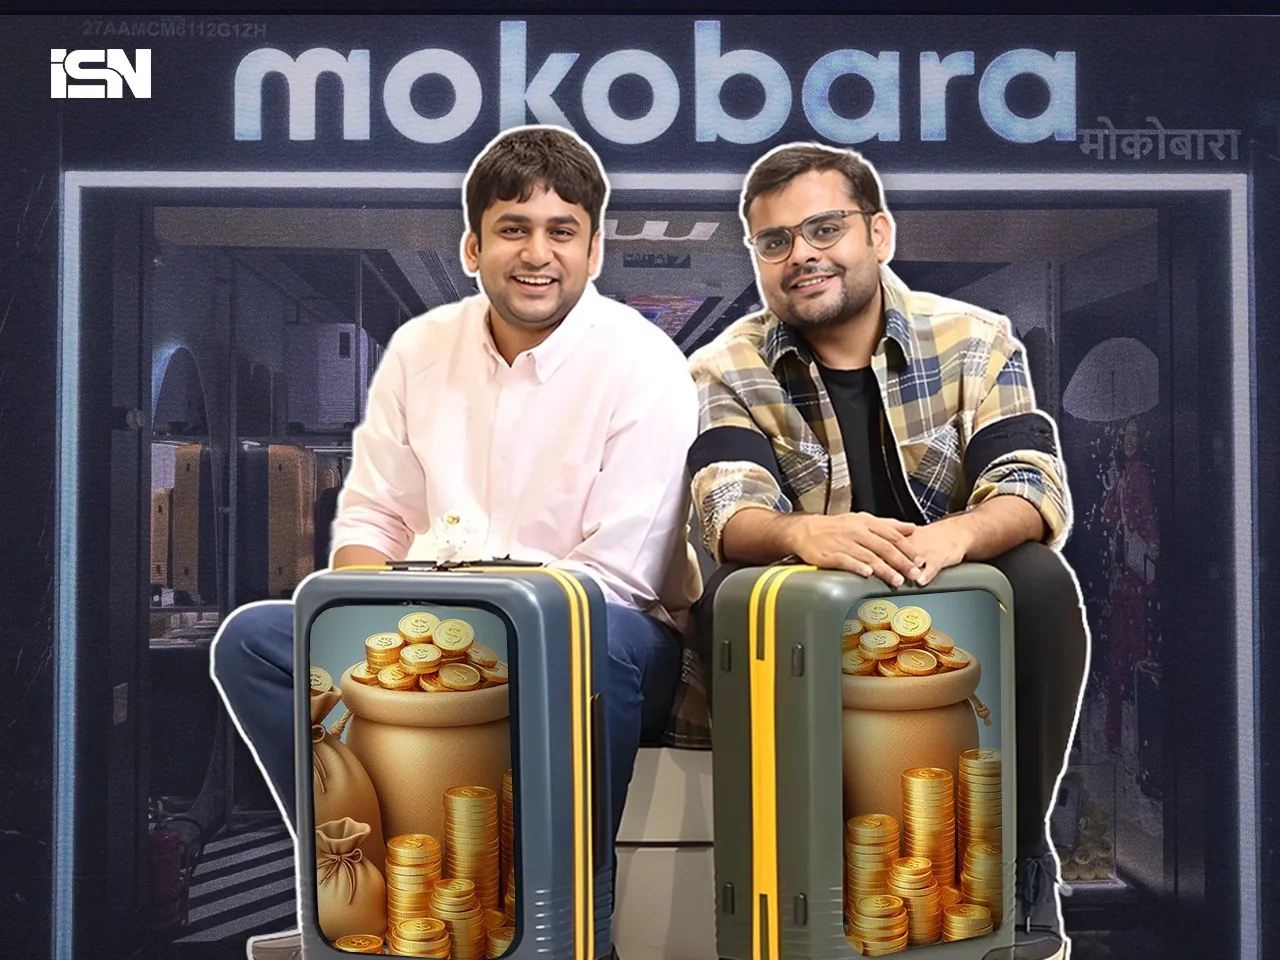 Bengaluru's D2C luggage brand Mokobara raises $12M in a Series B funding round